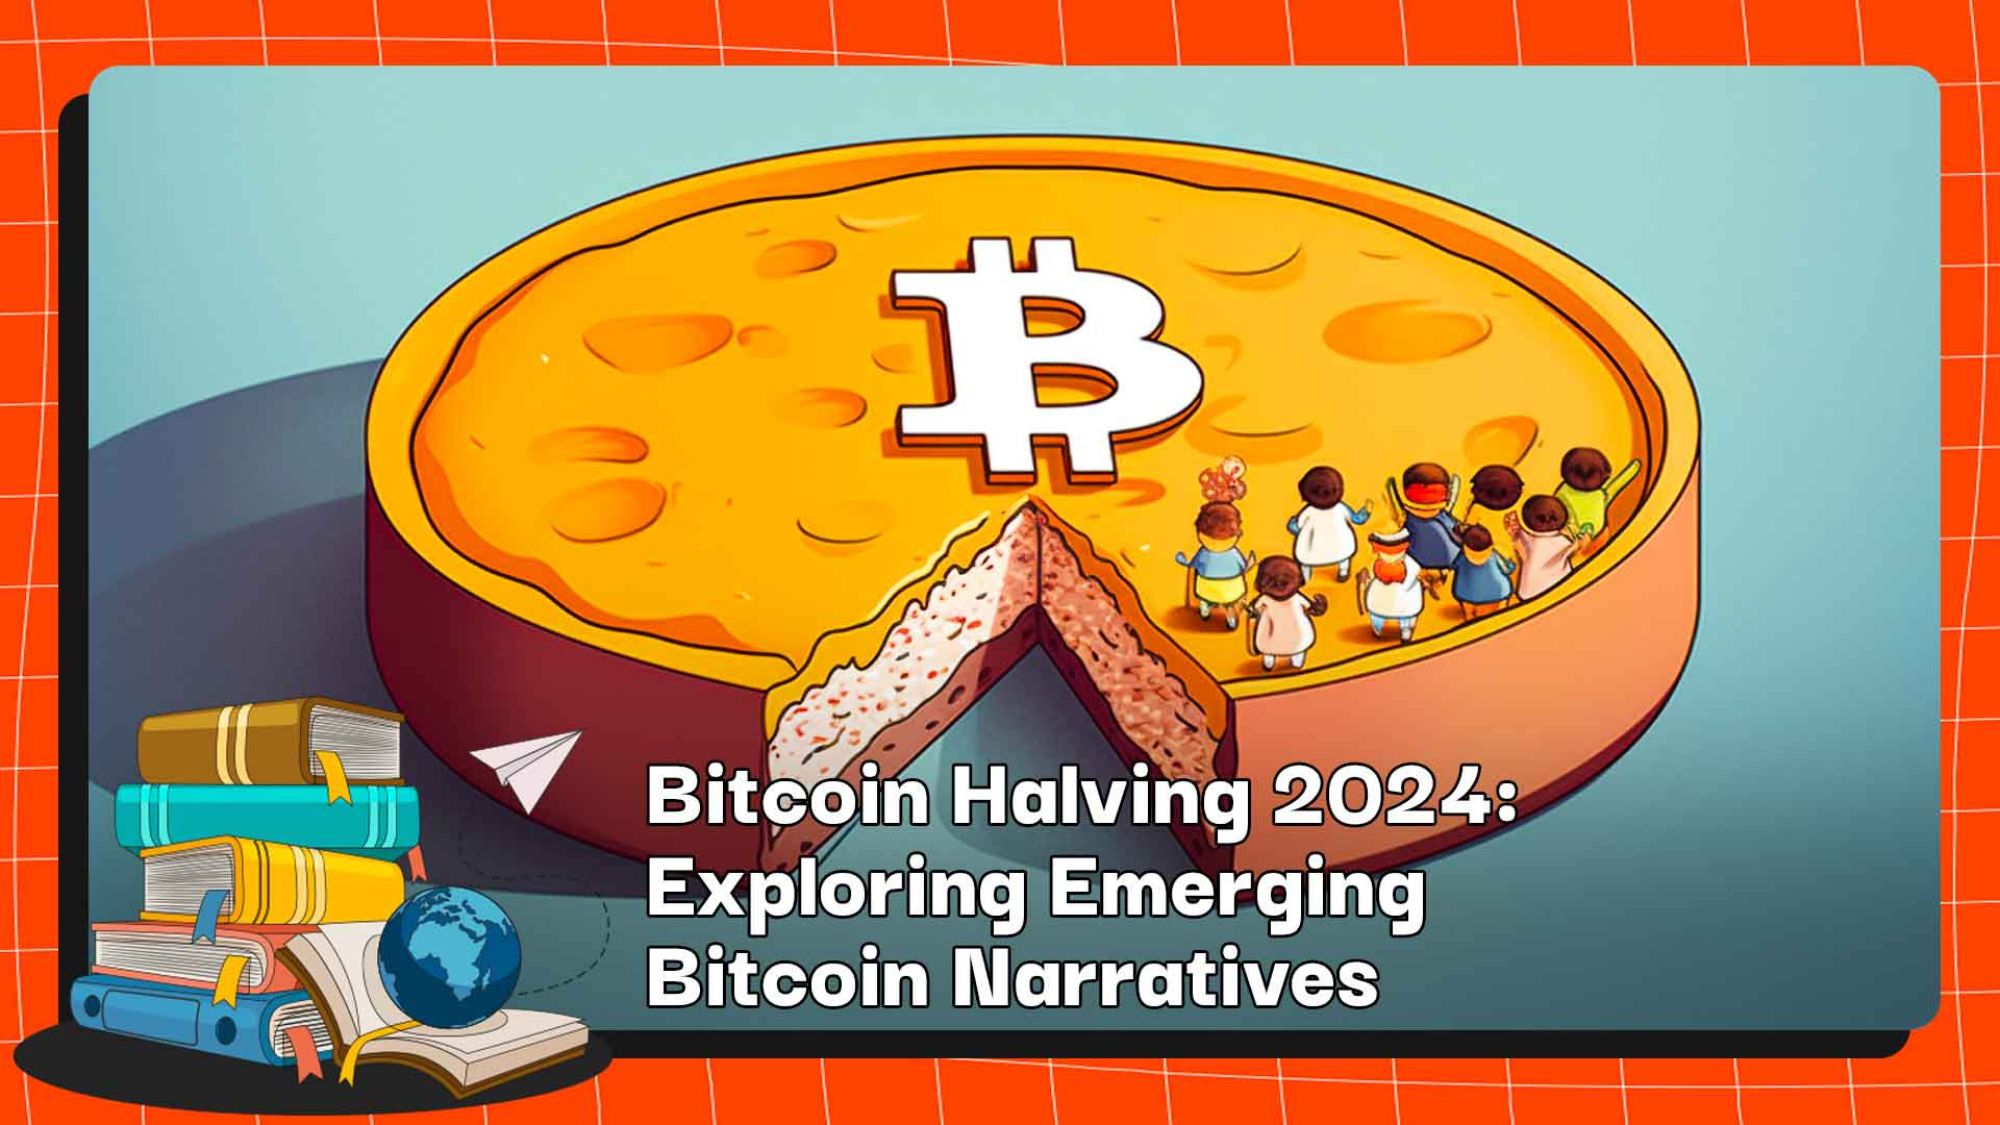 Bitcoin Halving 2024: Exploring Emerging Bitcoin Narratives